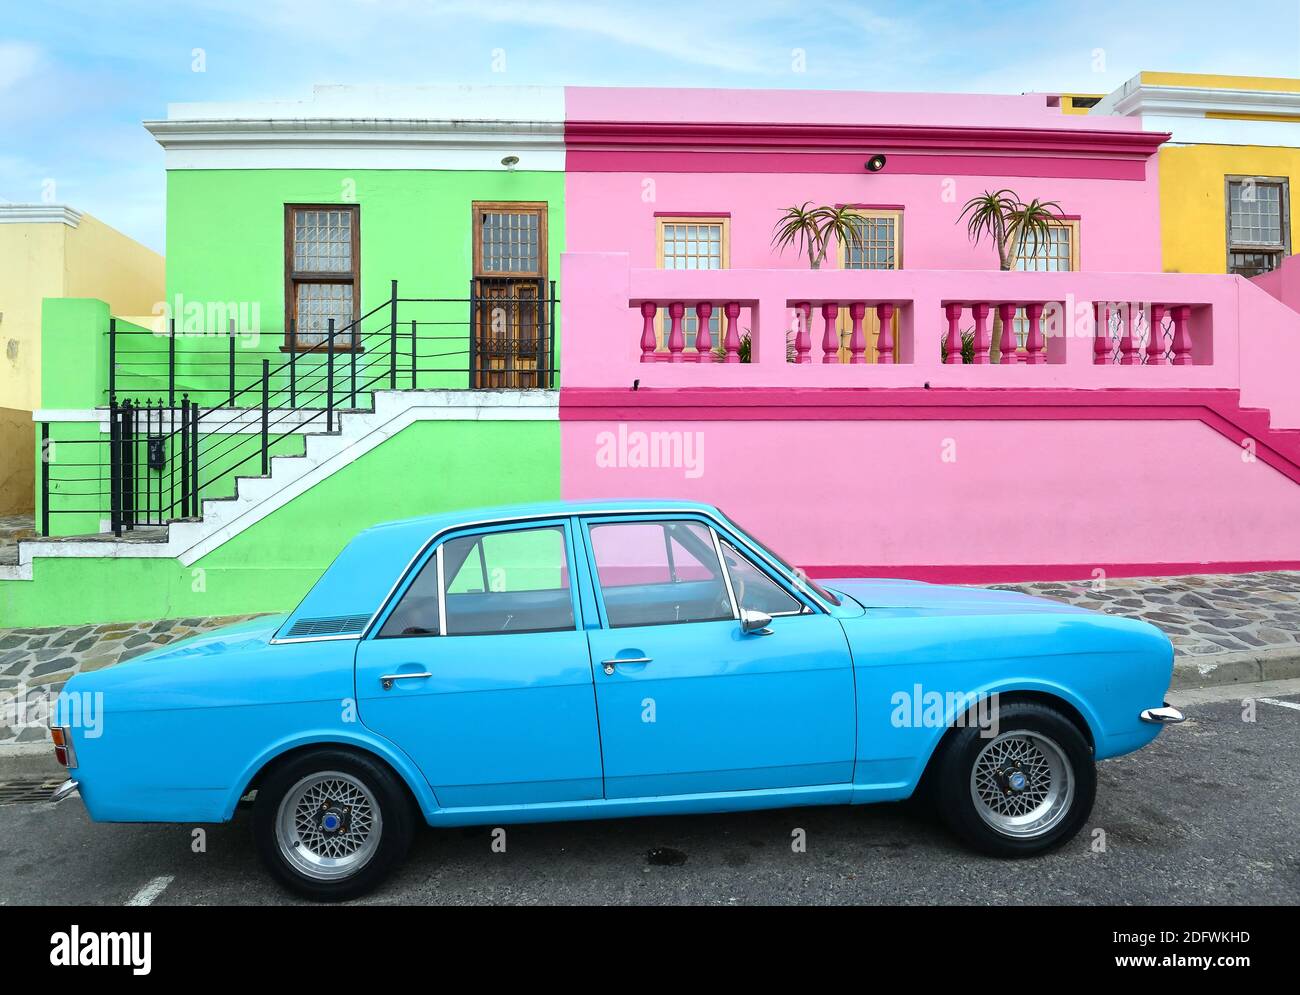 Bo-Kaap maisons colorées et voiture bleue au Cap, Afrique du Sud. Quartier traditionnel de Bokaap maisons colorées. Anciennement quartier malais. Banque D'Images